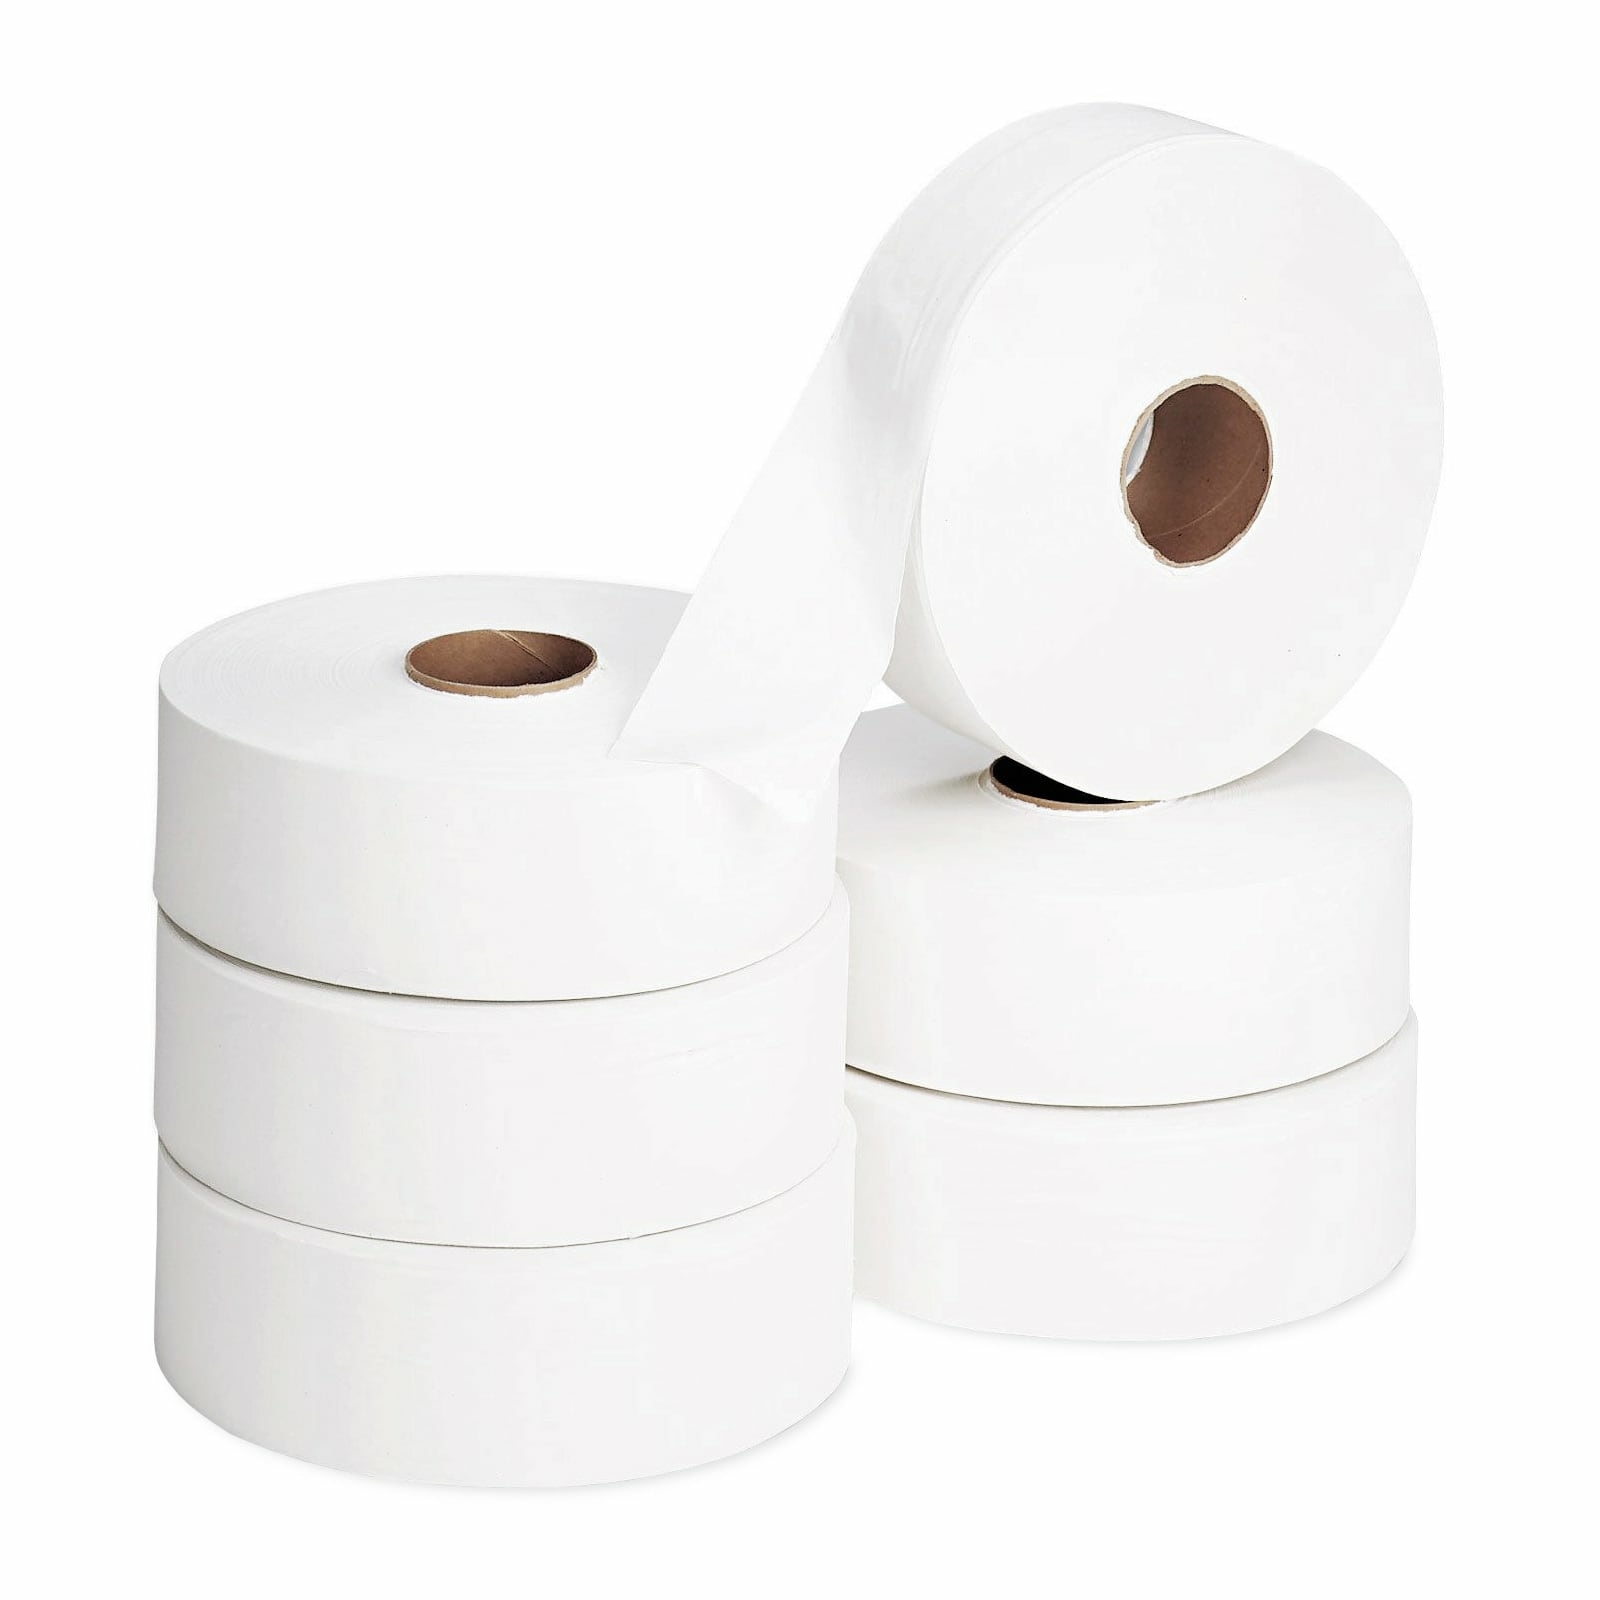 Papier toilette jumbo